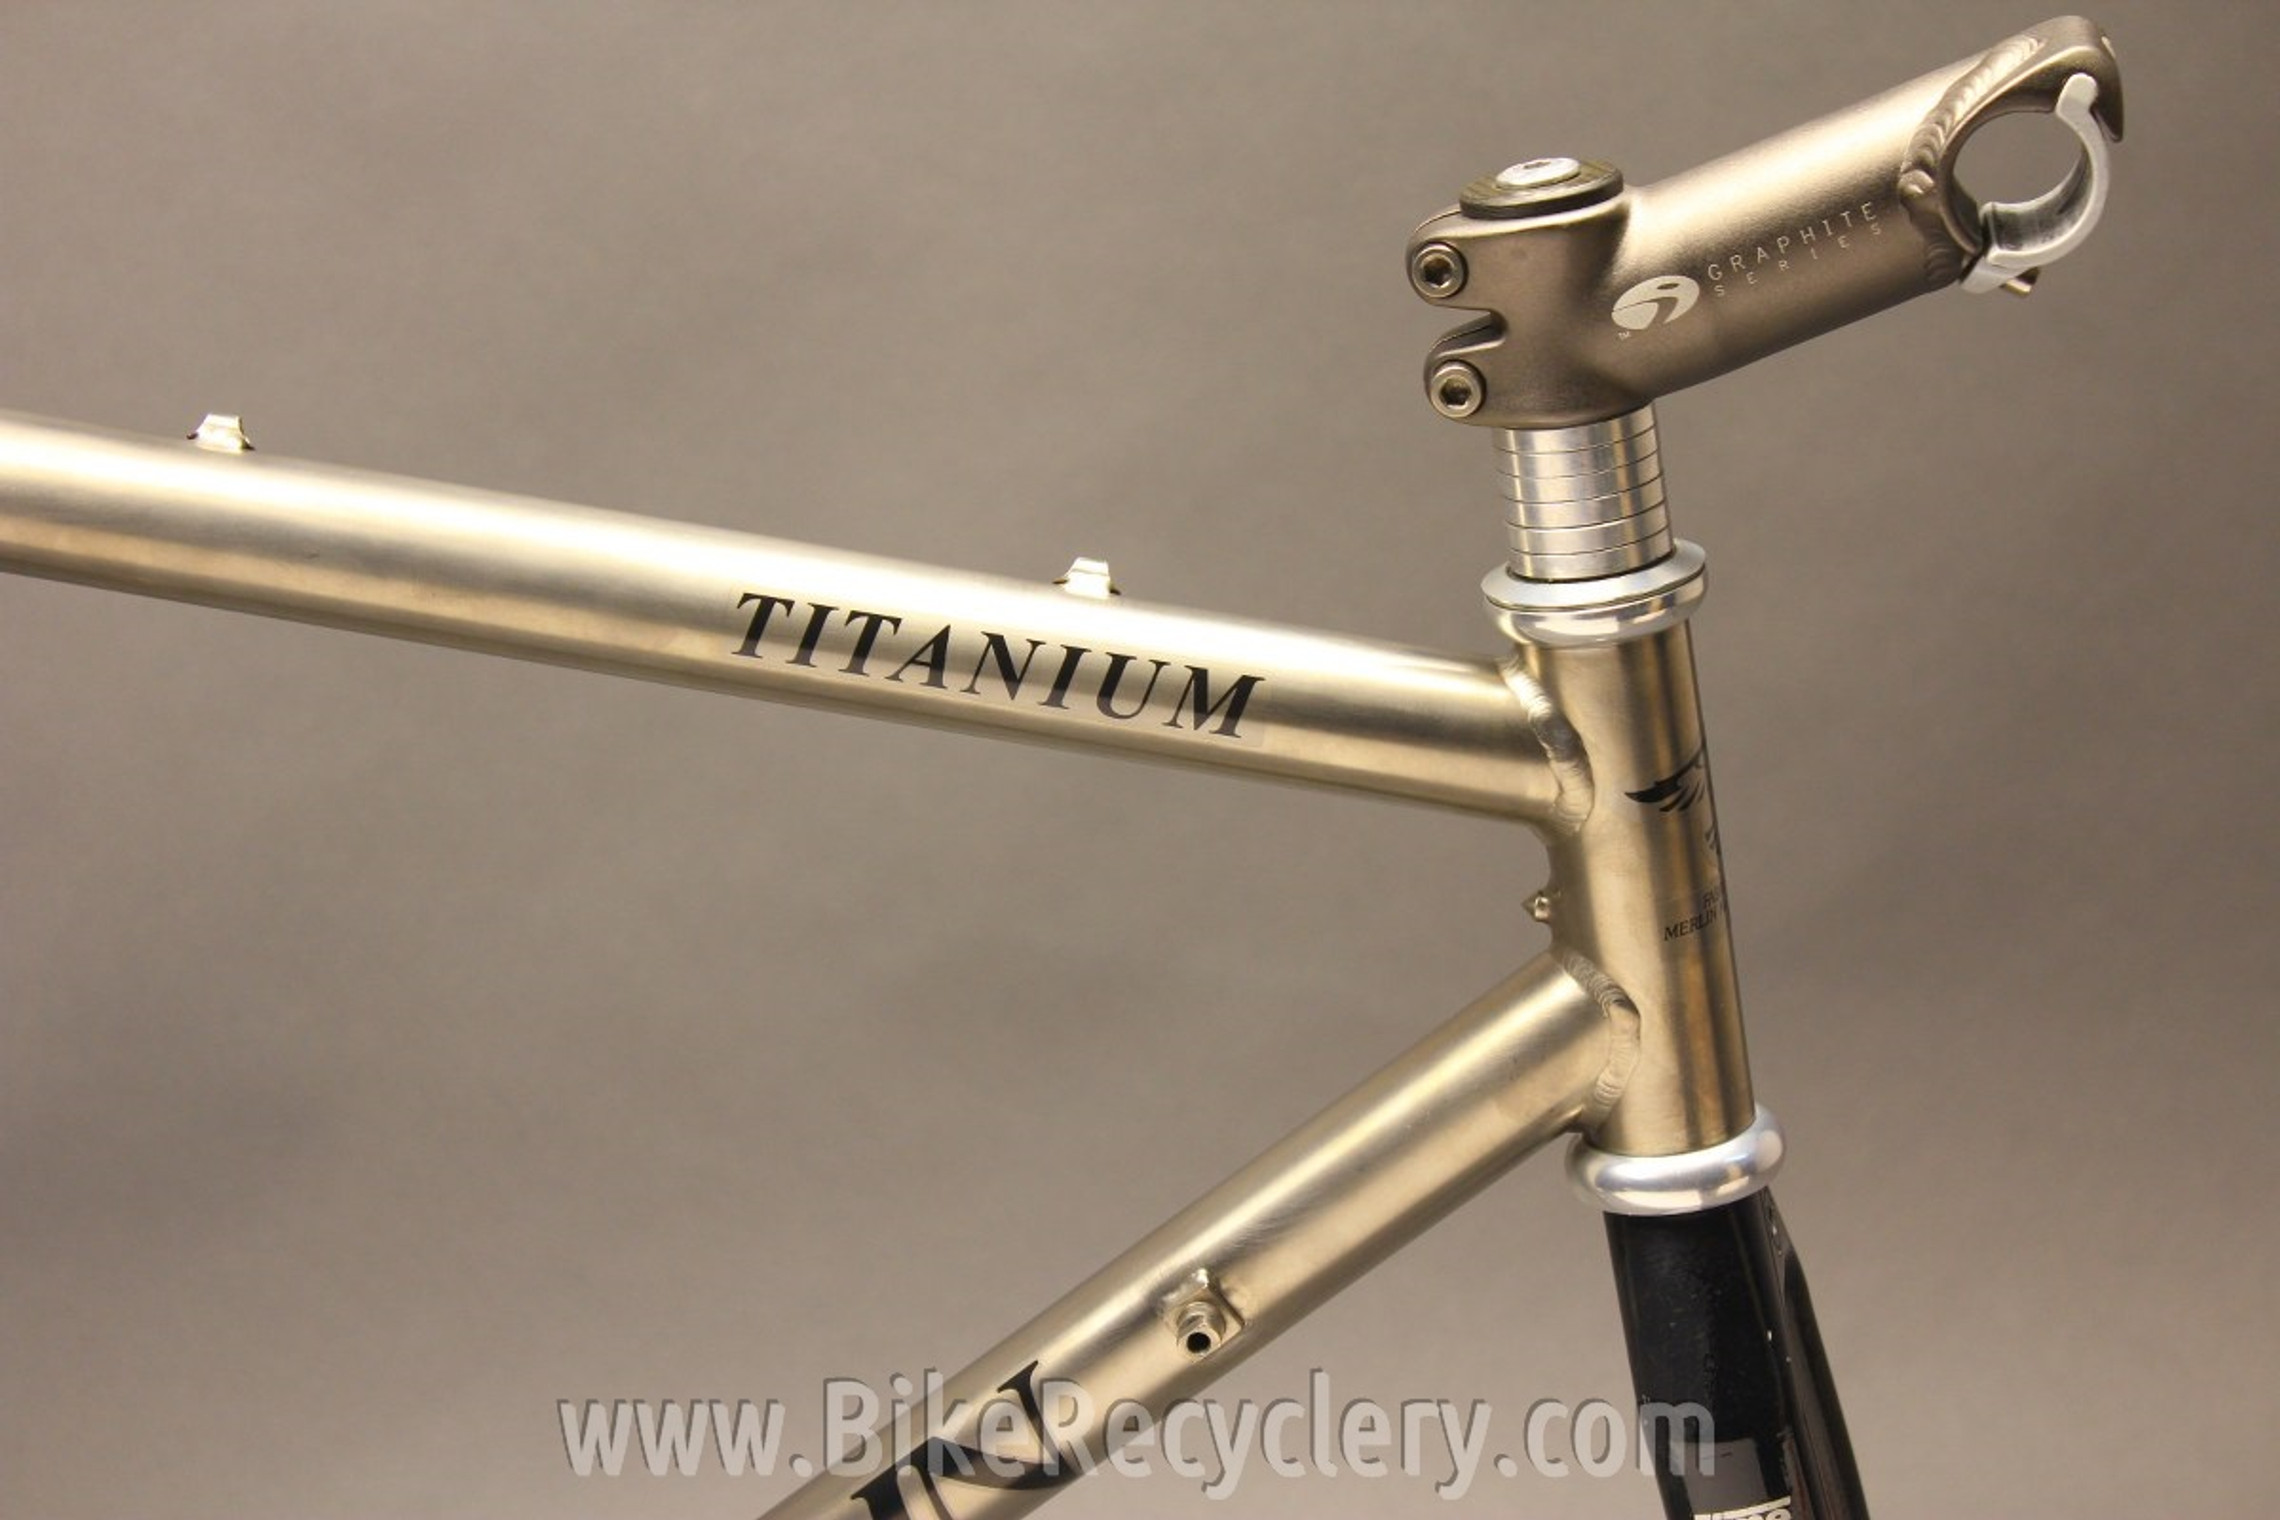 Titanium bike in Neiman Marcus catalog